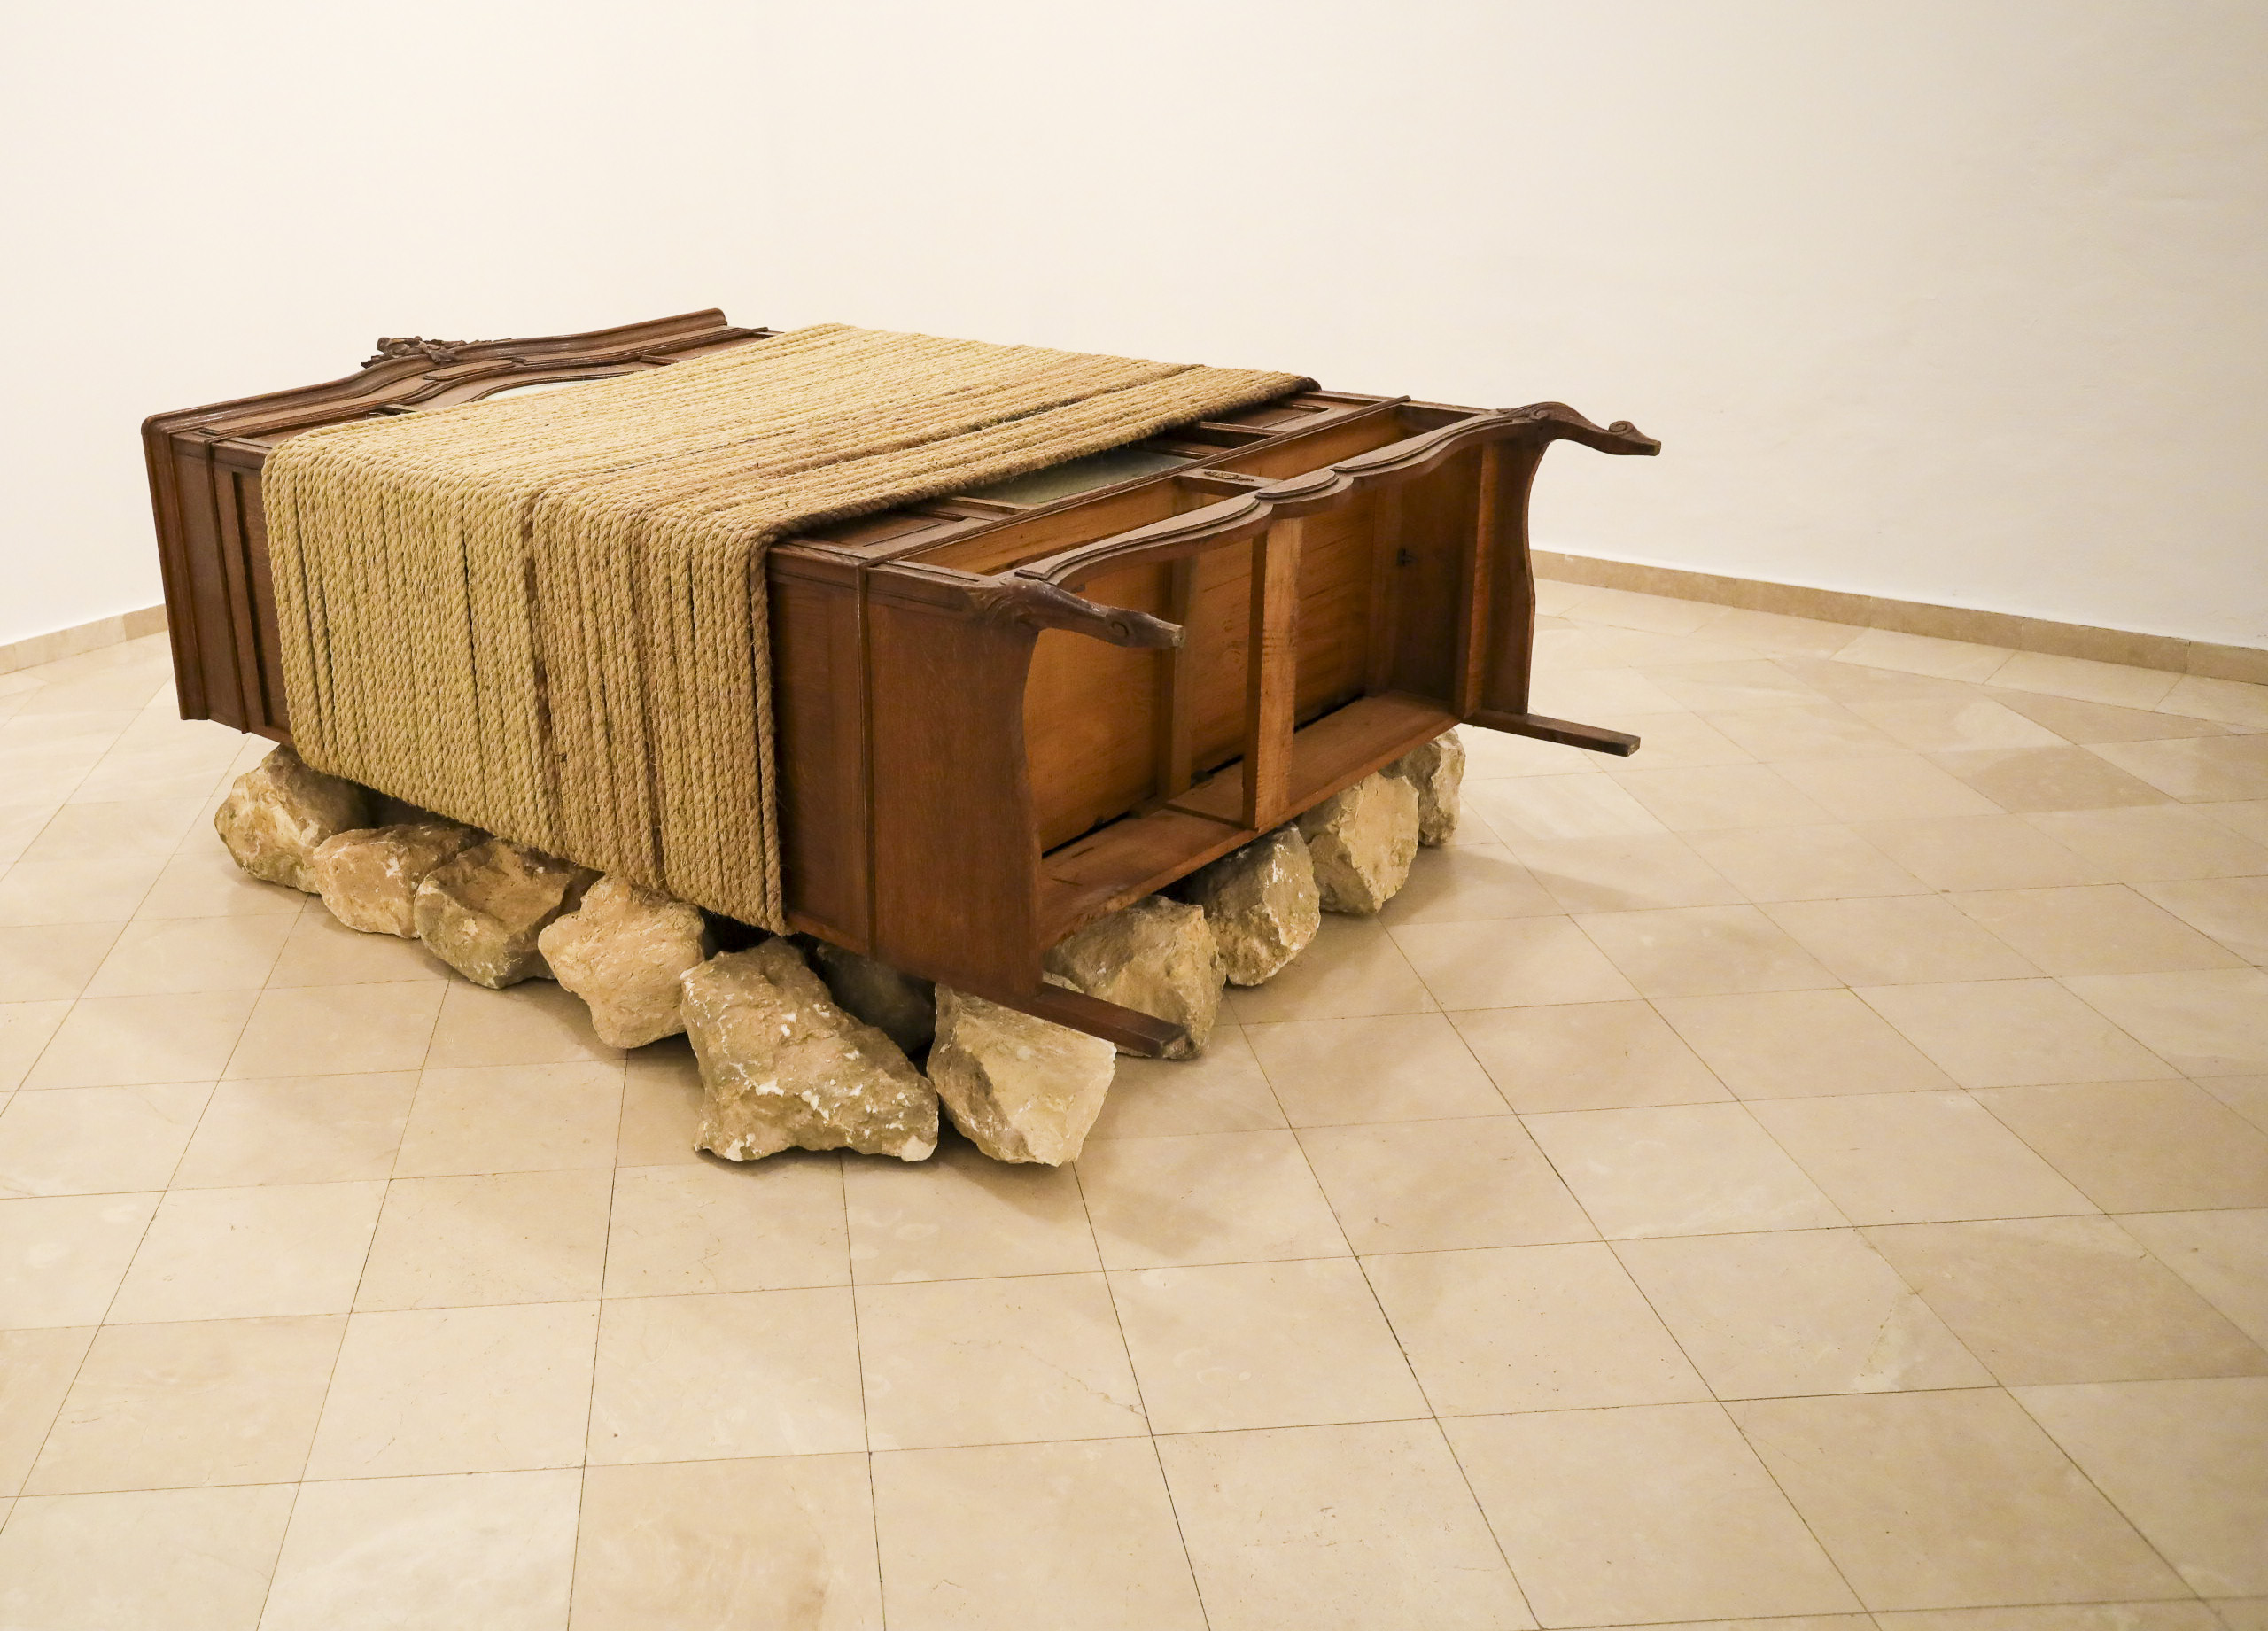 שיח-גלריה בתערוכה של יאניס קונליס - האמן אייל אסולין בשיחה עם דליה מנור